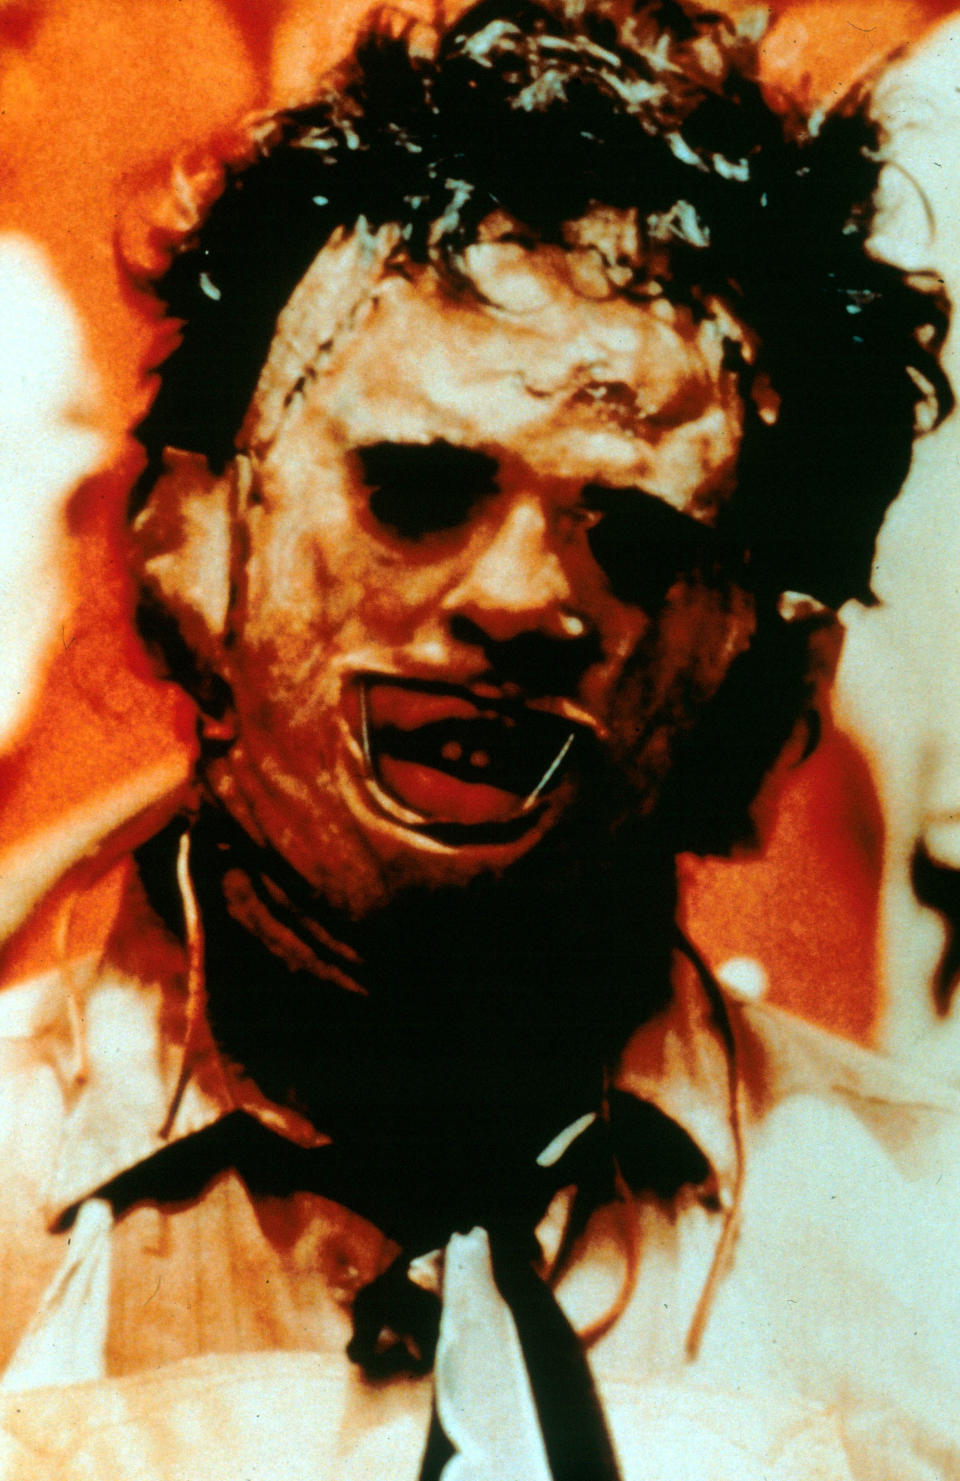 1974 war es Leatherface, der im "Texas Chainsaw Massacre" nicht nur sein Opfer, sondern auch den Zuschauern in Todesangst versetzt. Mit seiner Kettensäge ging er auf Menschenjagd, sein wahres Gesicht hat man im Film jedoch nie gesehen. (Bild-Copyright: Moviestore Collection/REX)